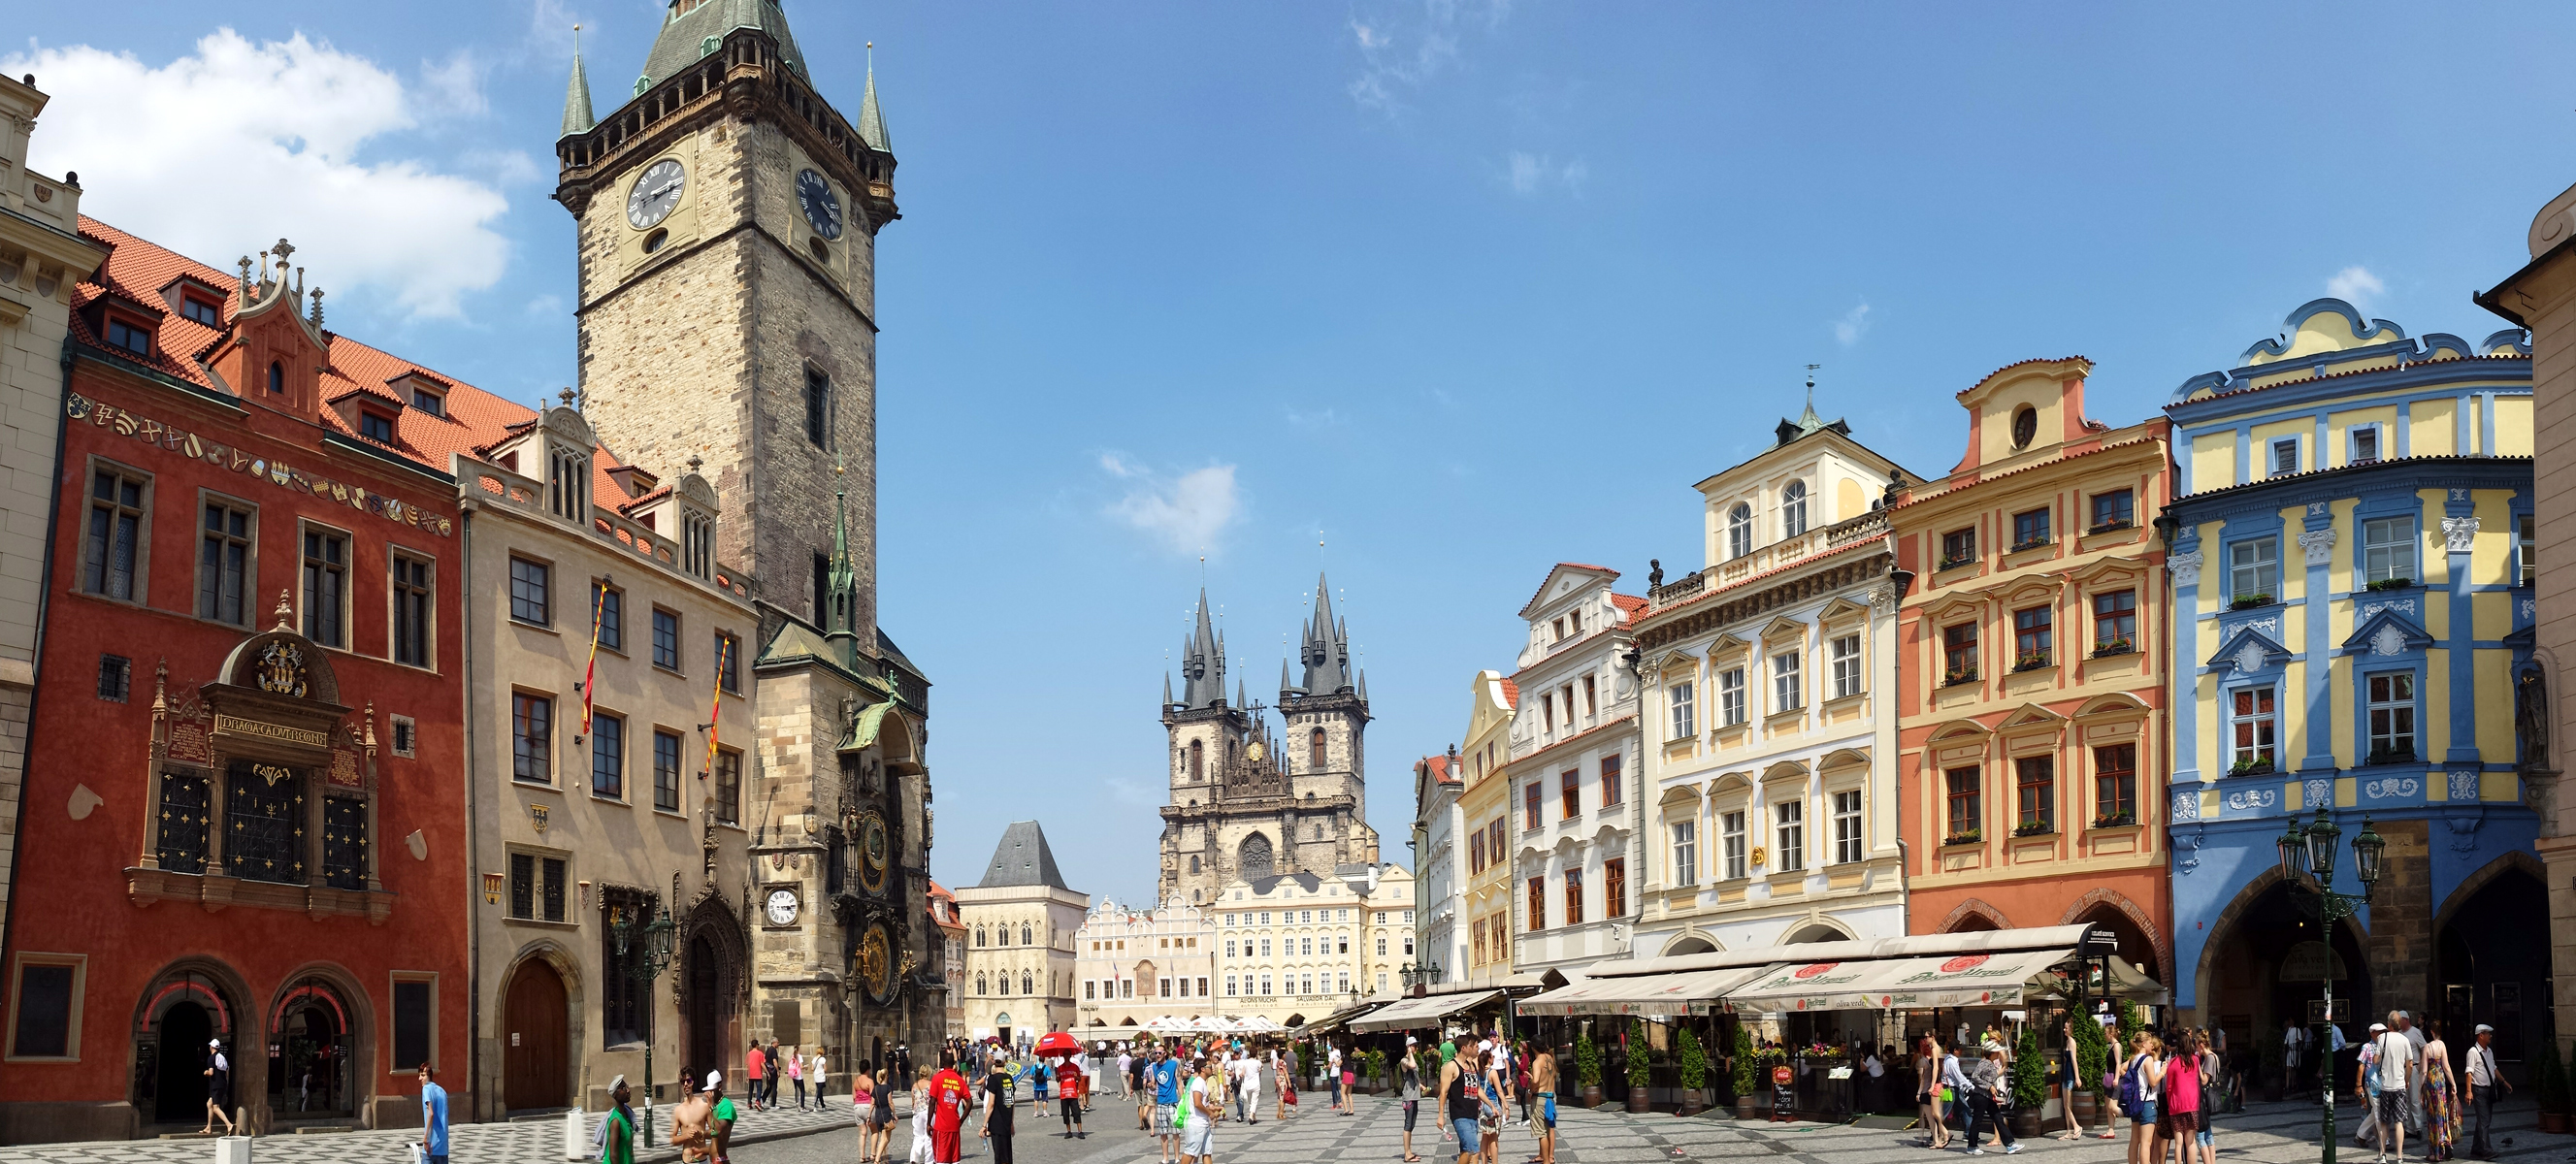 архитектура страны Староместская площадь Прага без смс